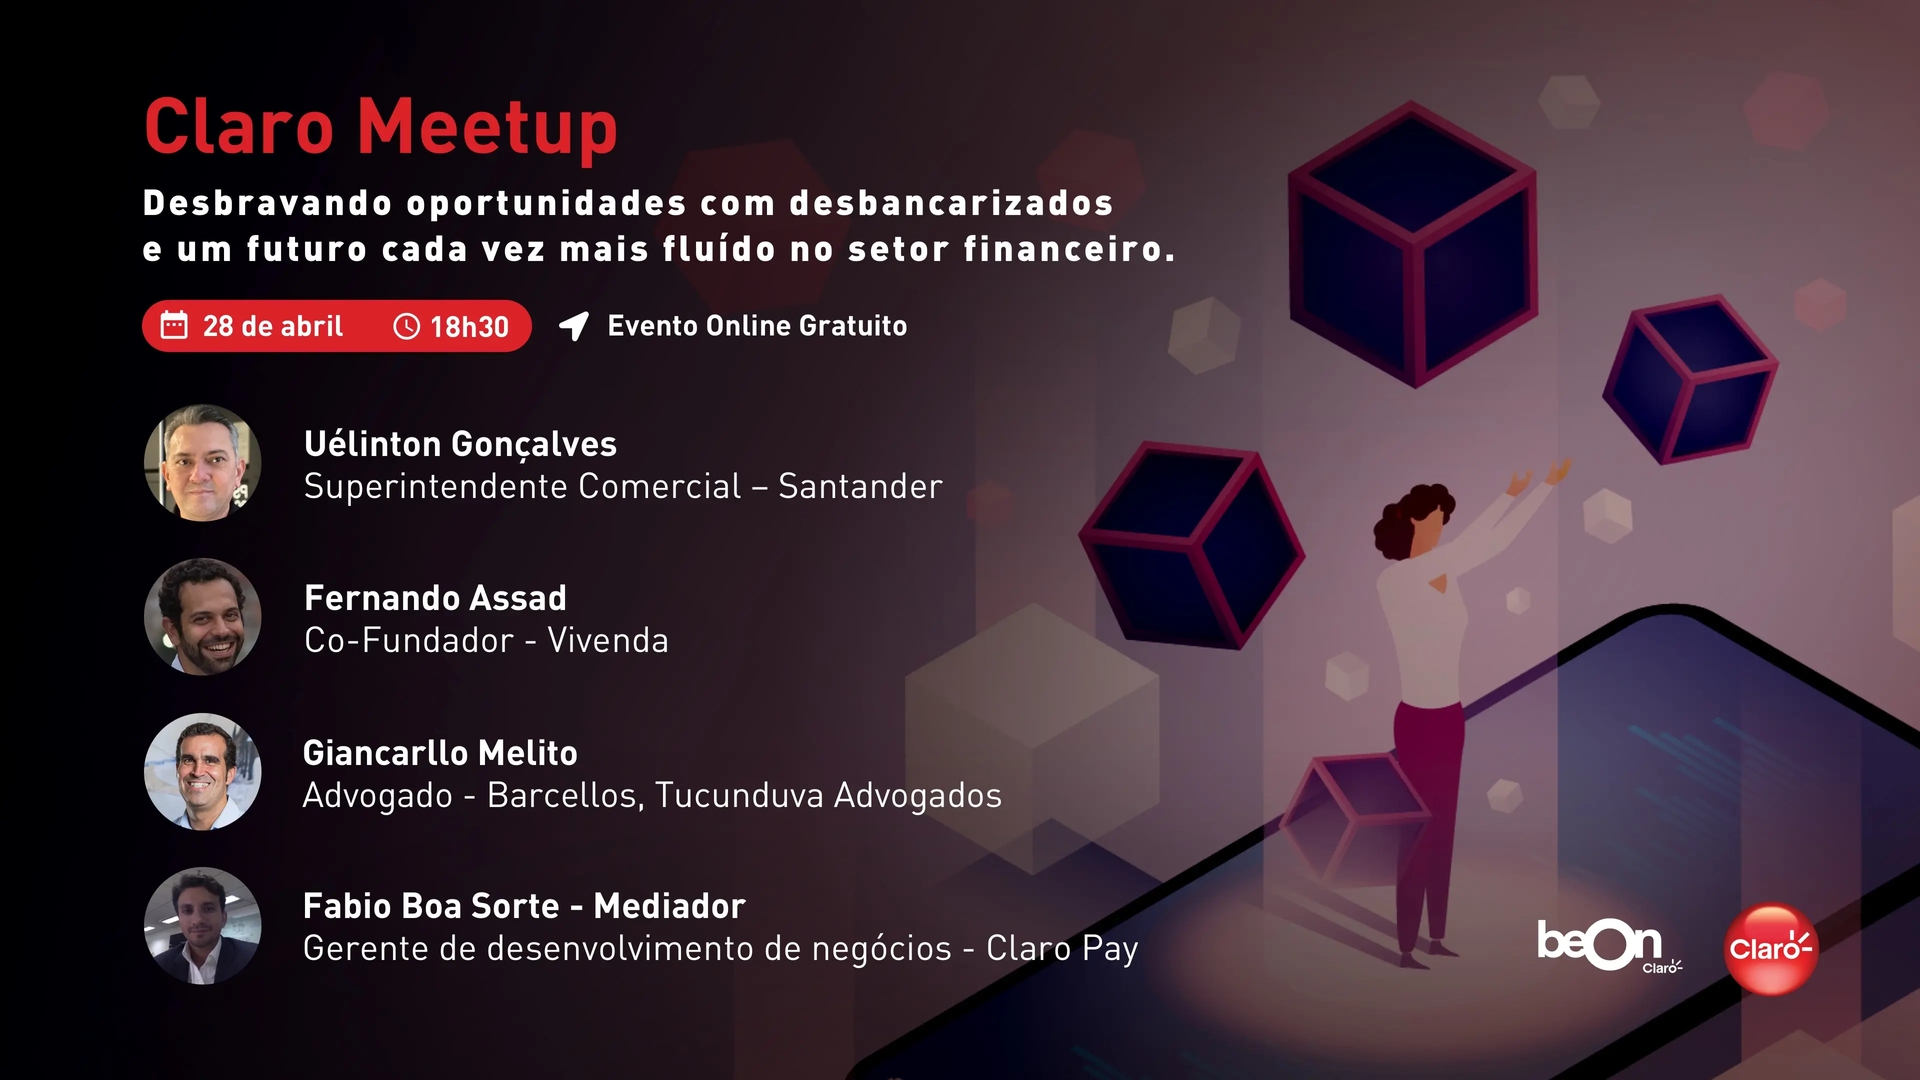 Imagem do convite do Claro Meetup Desbravando oportunidades com desbancarizados e um futuro cada vez mais fluído no setor financeiro.